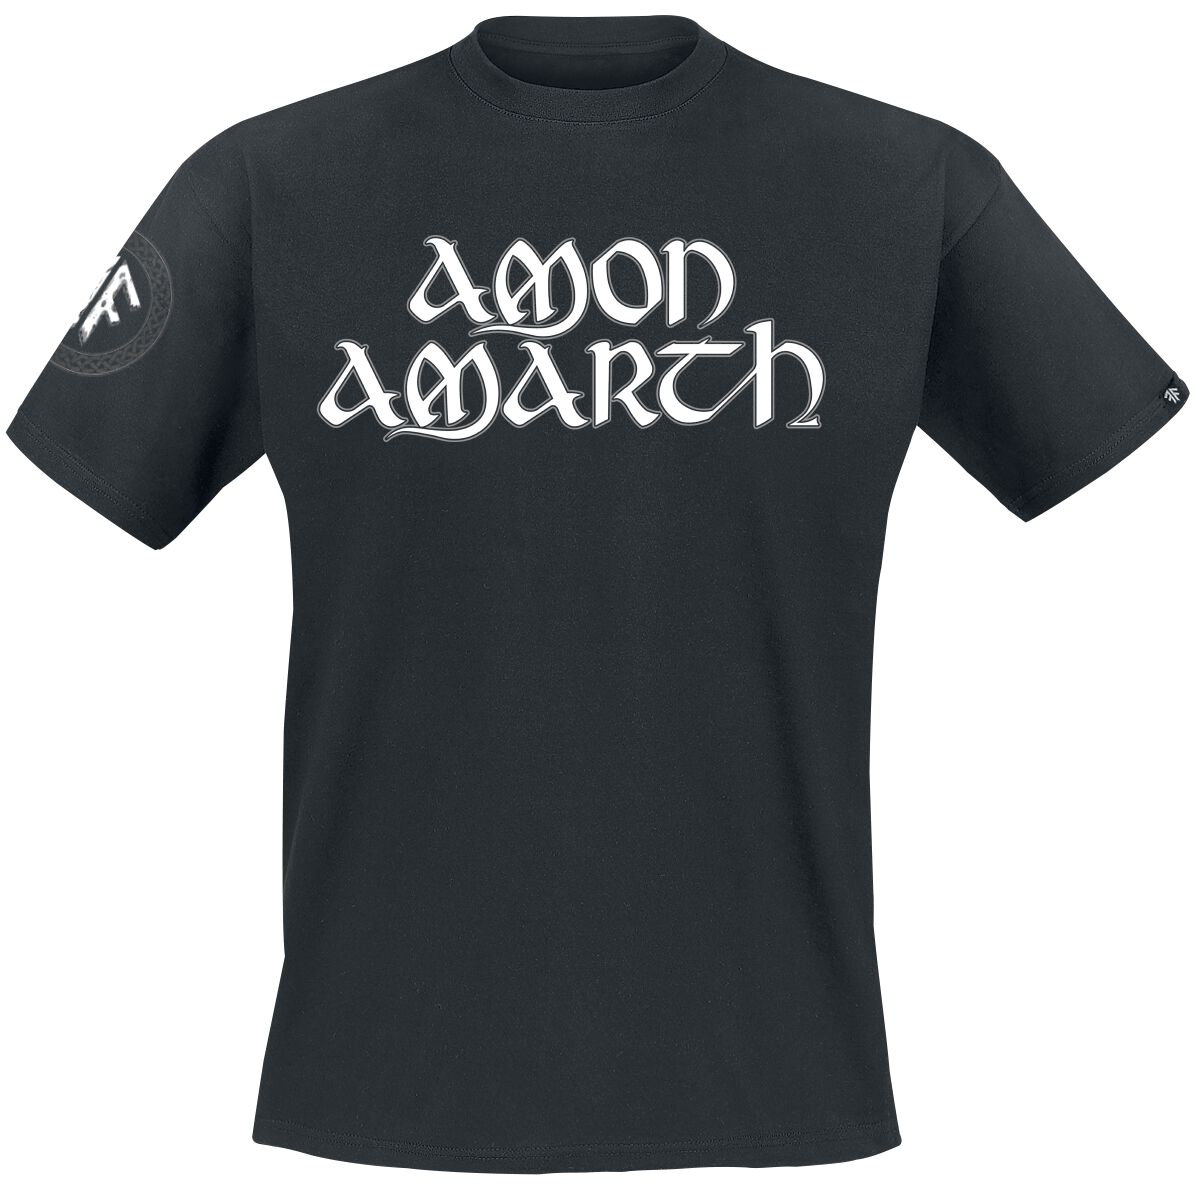 Amon Amarth T-Shirt - Mjoelner - S bis XXL - für Männer - Größe XXL - schwarz  - EMP exklusives Merchandise!